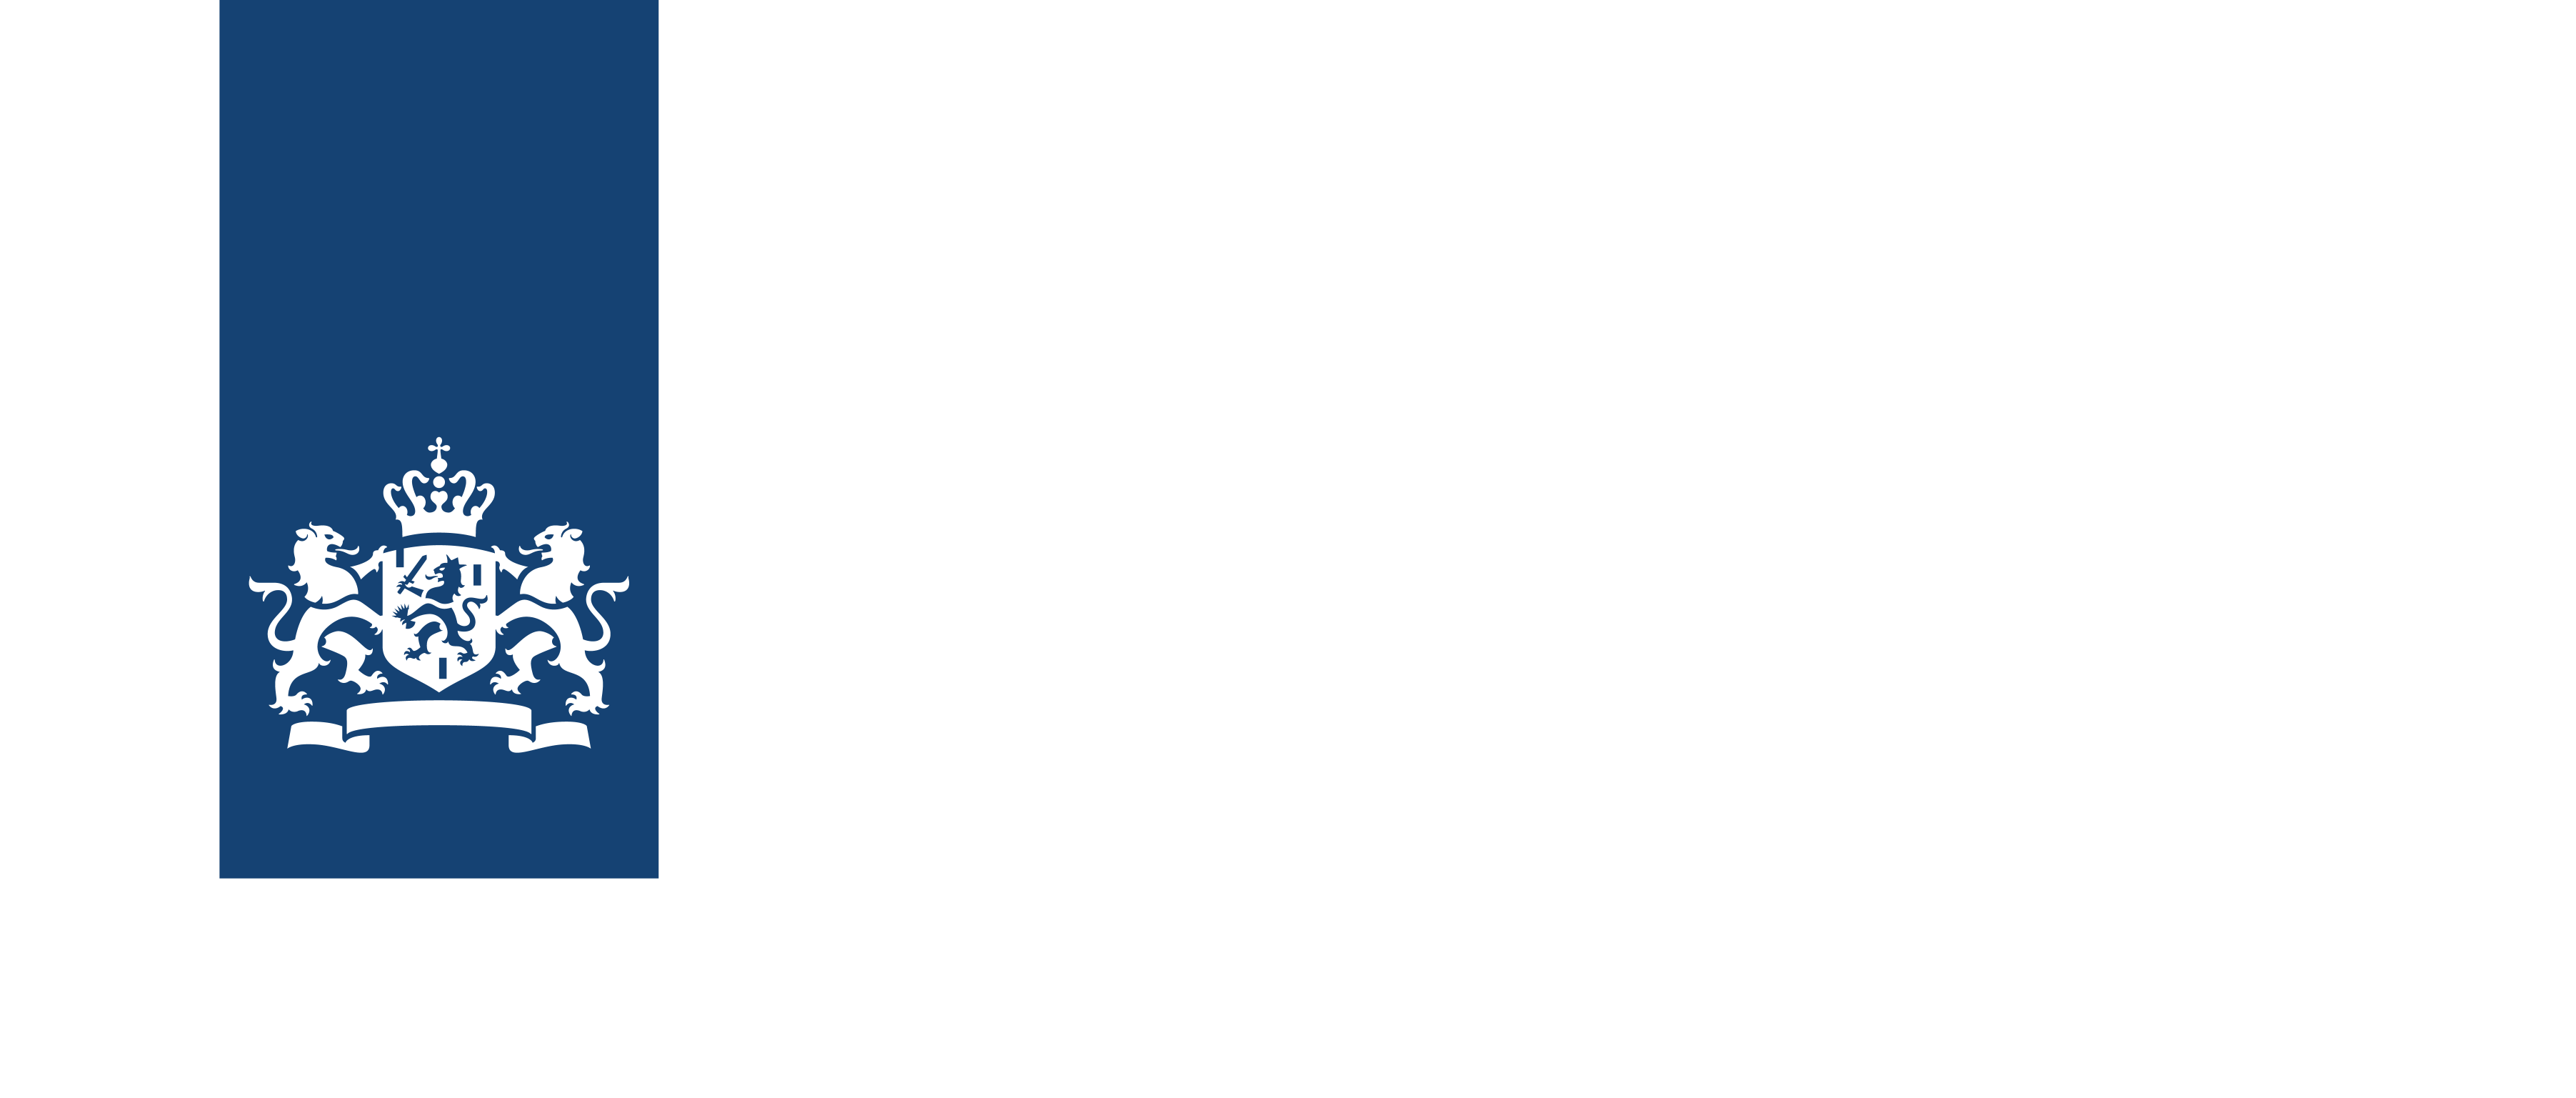 Rijksdienst voor ondernemend nederland logo